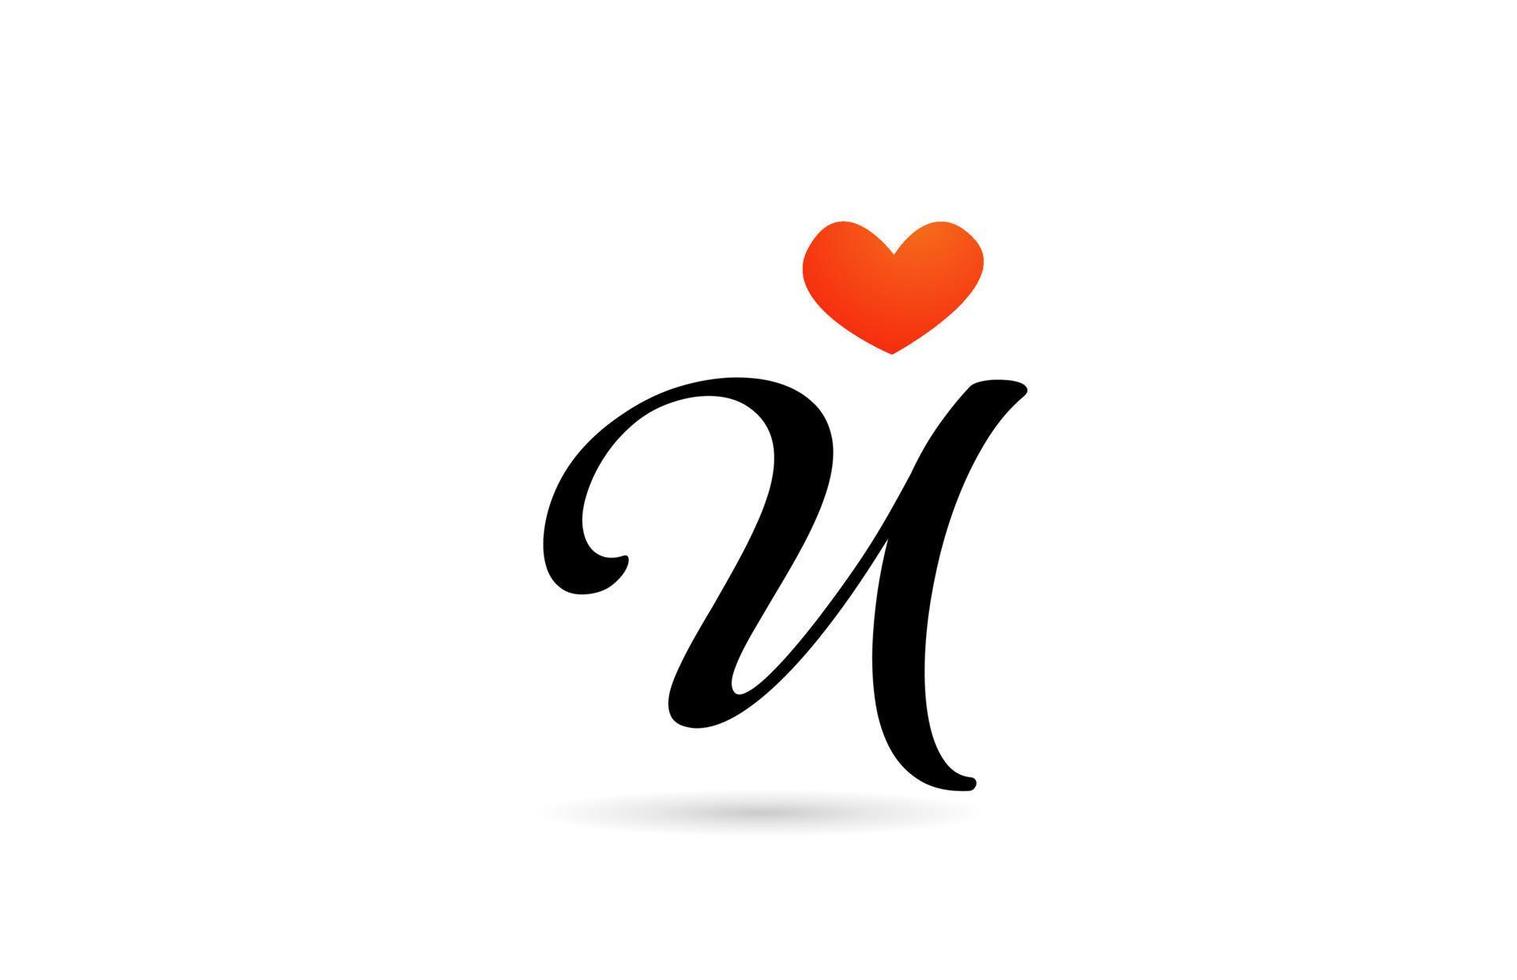 création manuscrite du logo de l'icône de la lettre de l'alphabet u. modèle créatif pour les entreprises avec coeur d'amour vecteur